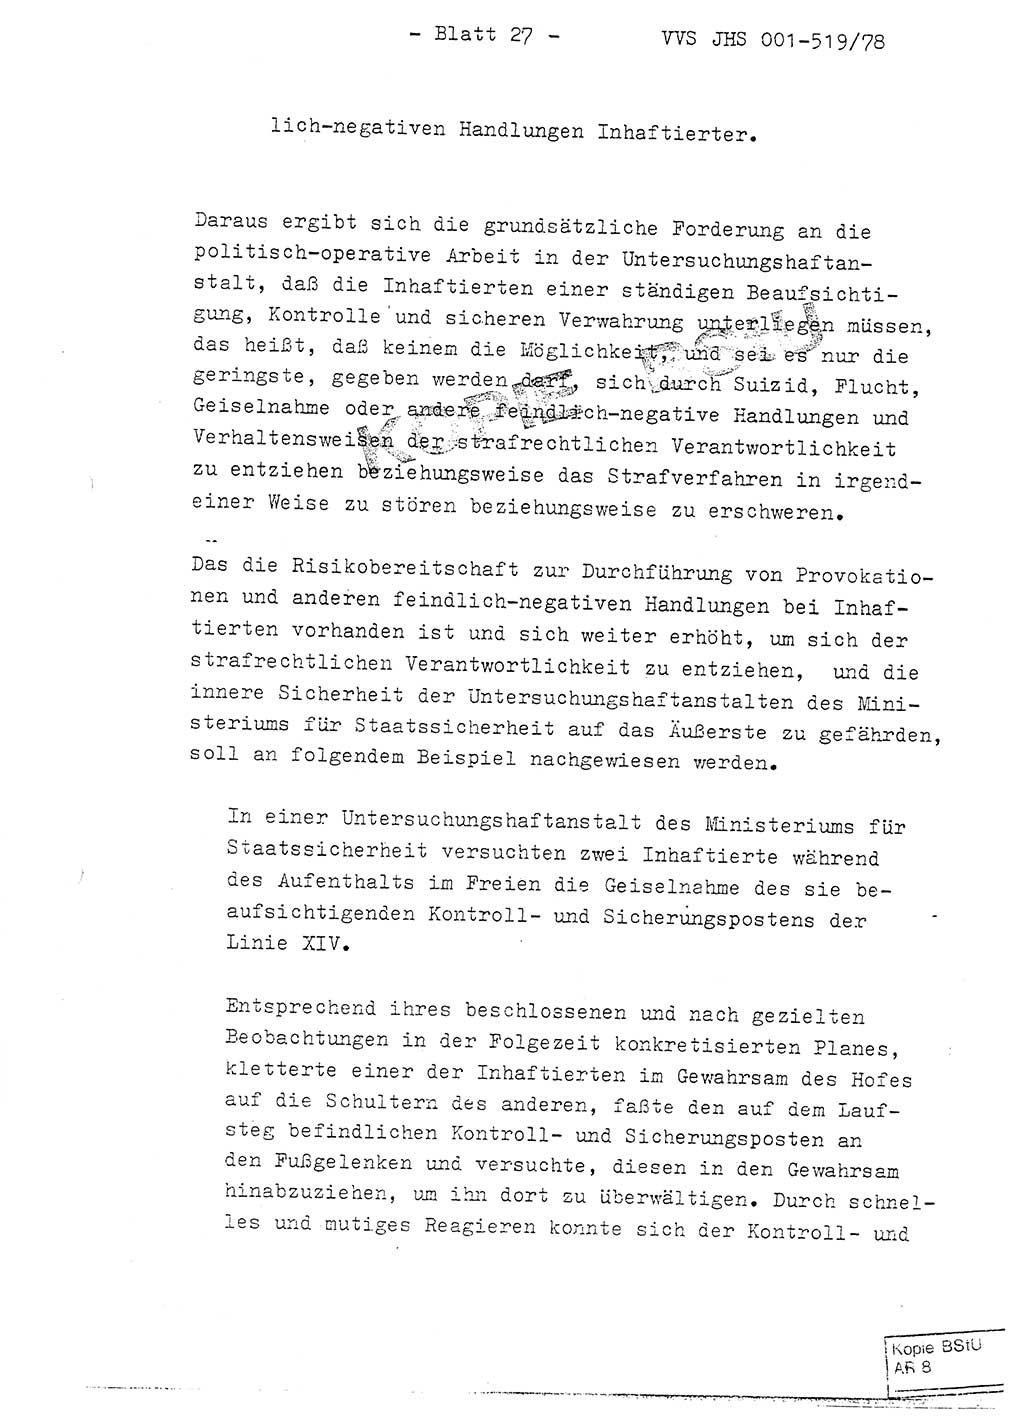 Fachschulabschlußarbeit Hauptmann Alfons Lützelberger (Abt. ⅩⅣ), Ministerium für Staatssicherheit (MfS) [Deutsche Demokratische Republik (DDR)], Juristische Hochschule (JHS), Vertrauliche Verschlußsache (VVS) 001-519/78, Potsdam 1978, Blatt 27 (FS-Abschl.-Arb. MfS DDR JHS VVS 001-519/78 1978, Bl. 27)